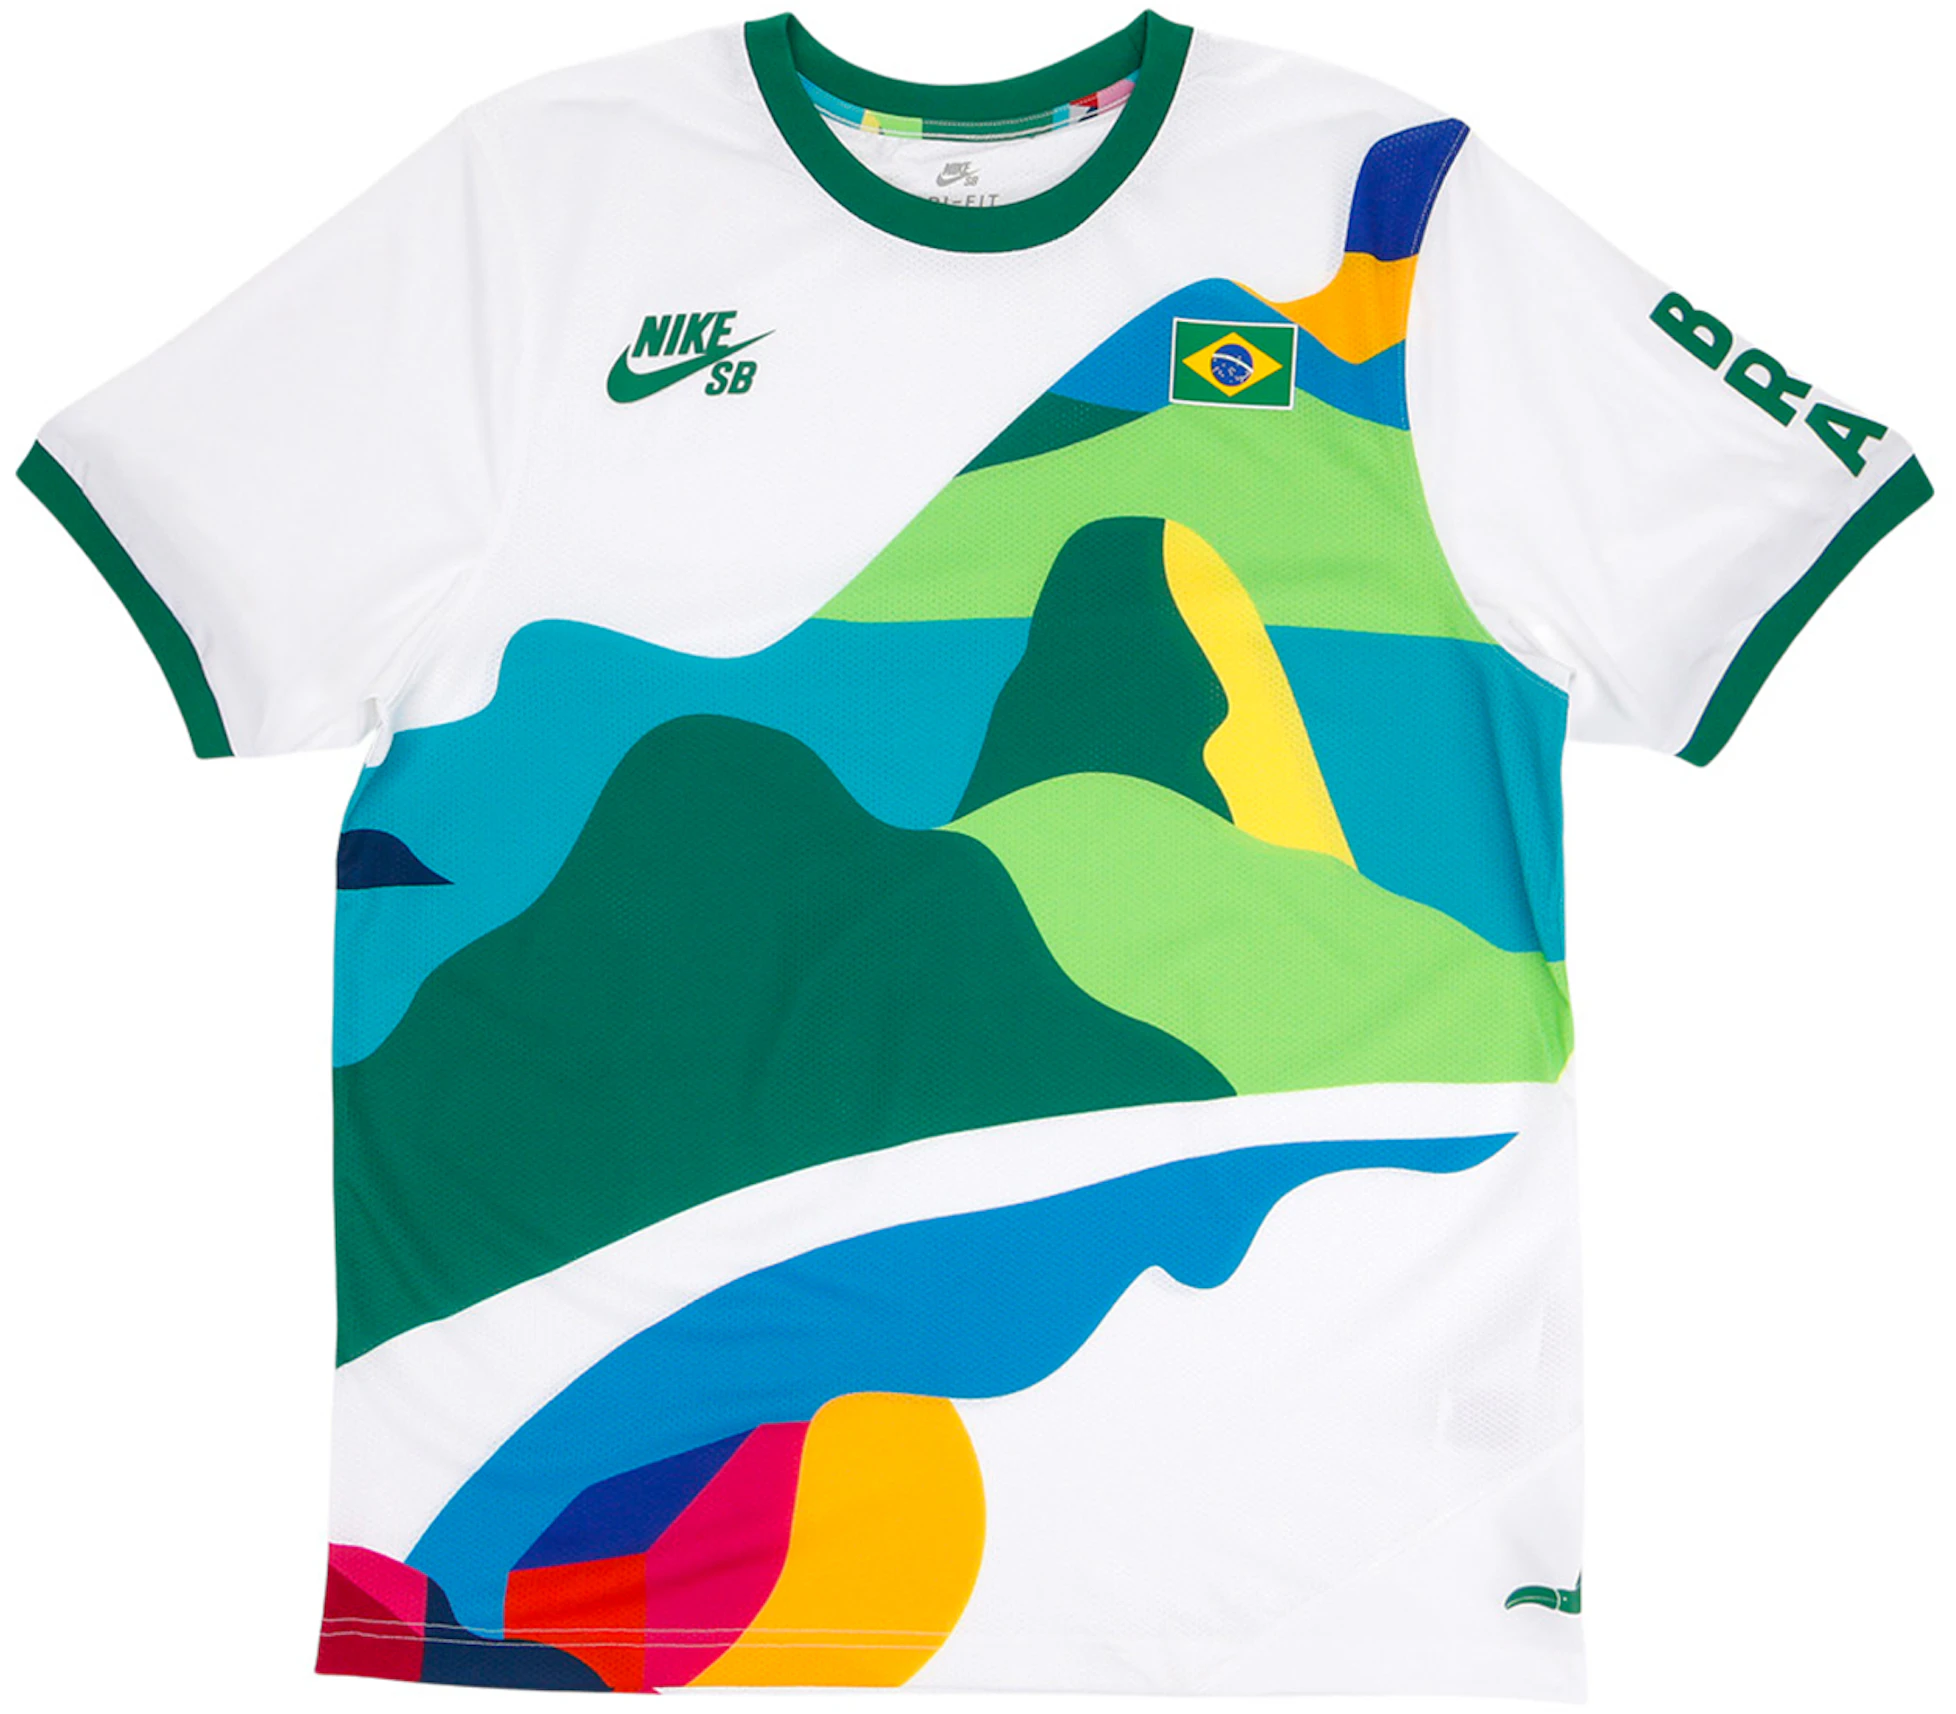 Nike SB x Brazil Federation Kit Crew White/Clover - FW21 - US